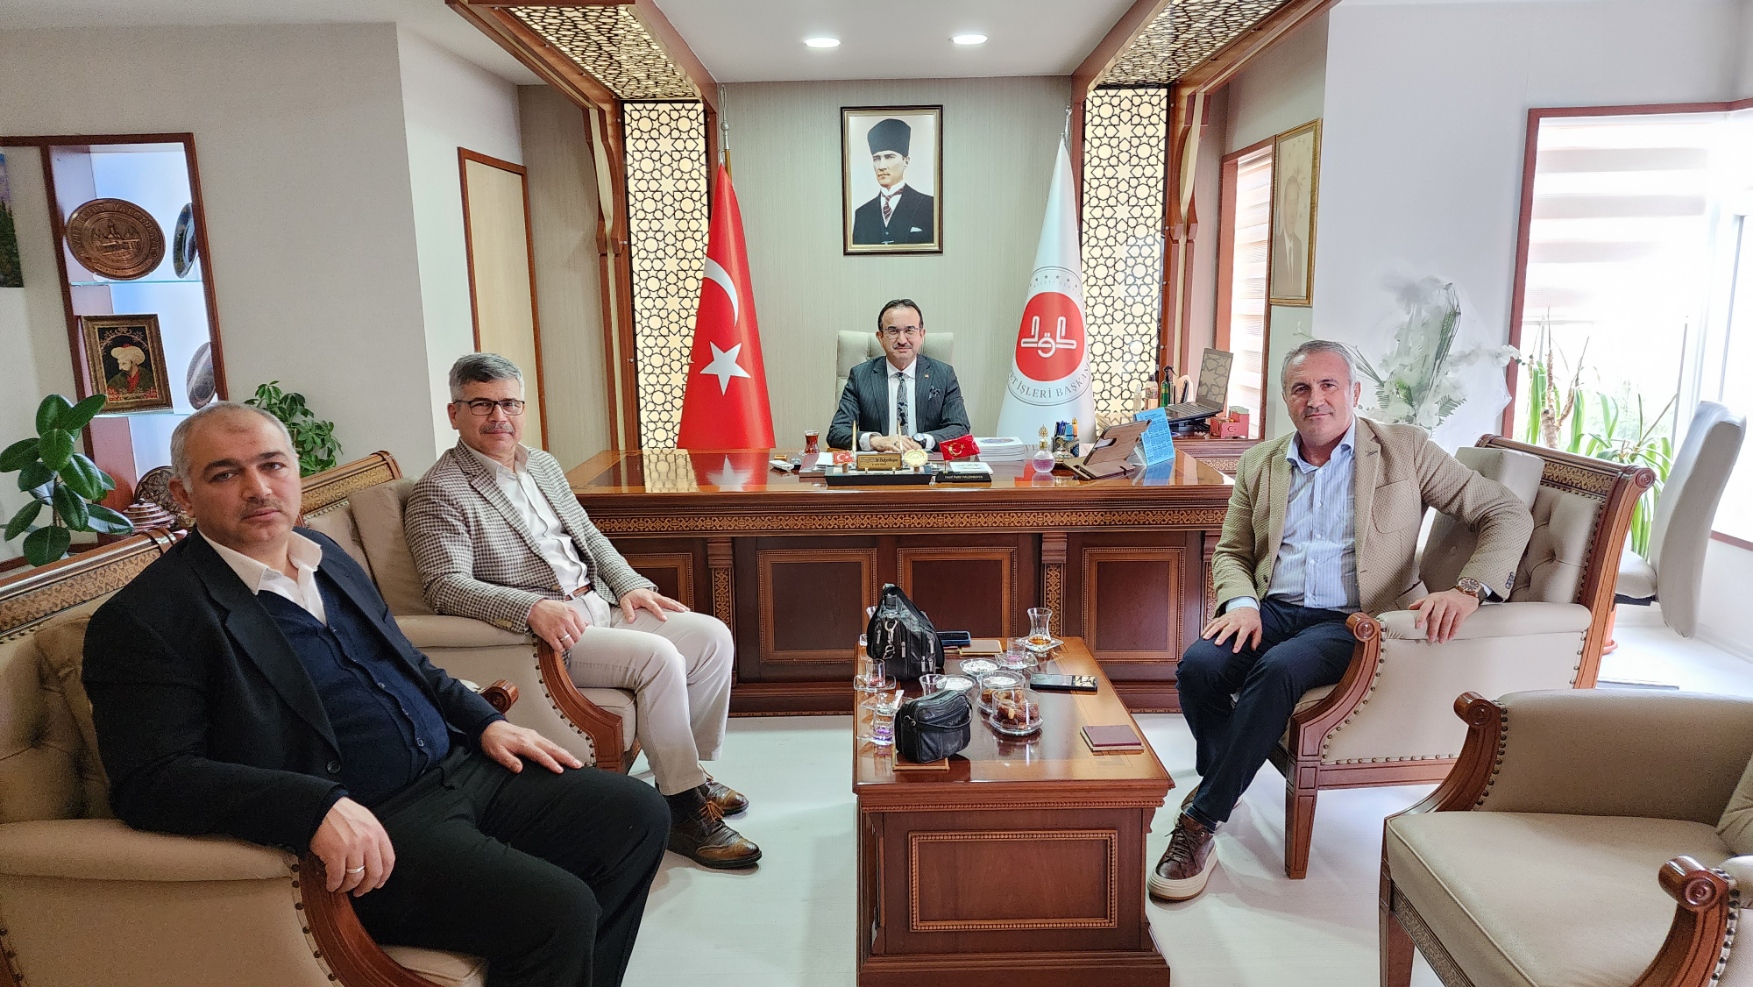 Antalya İl Müftülüğü Öncülüğünde Sosyal Çalışmalar ve Projeler Toplantısı Gerçekleştirildi